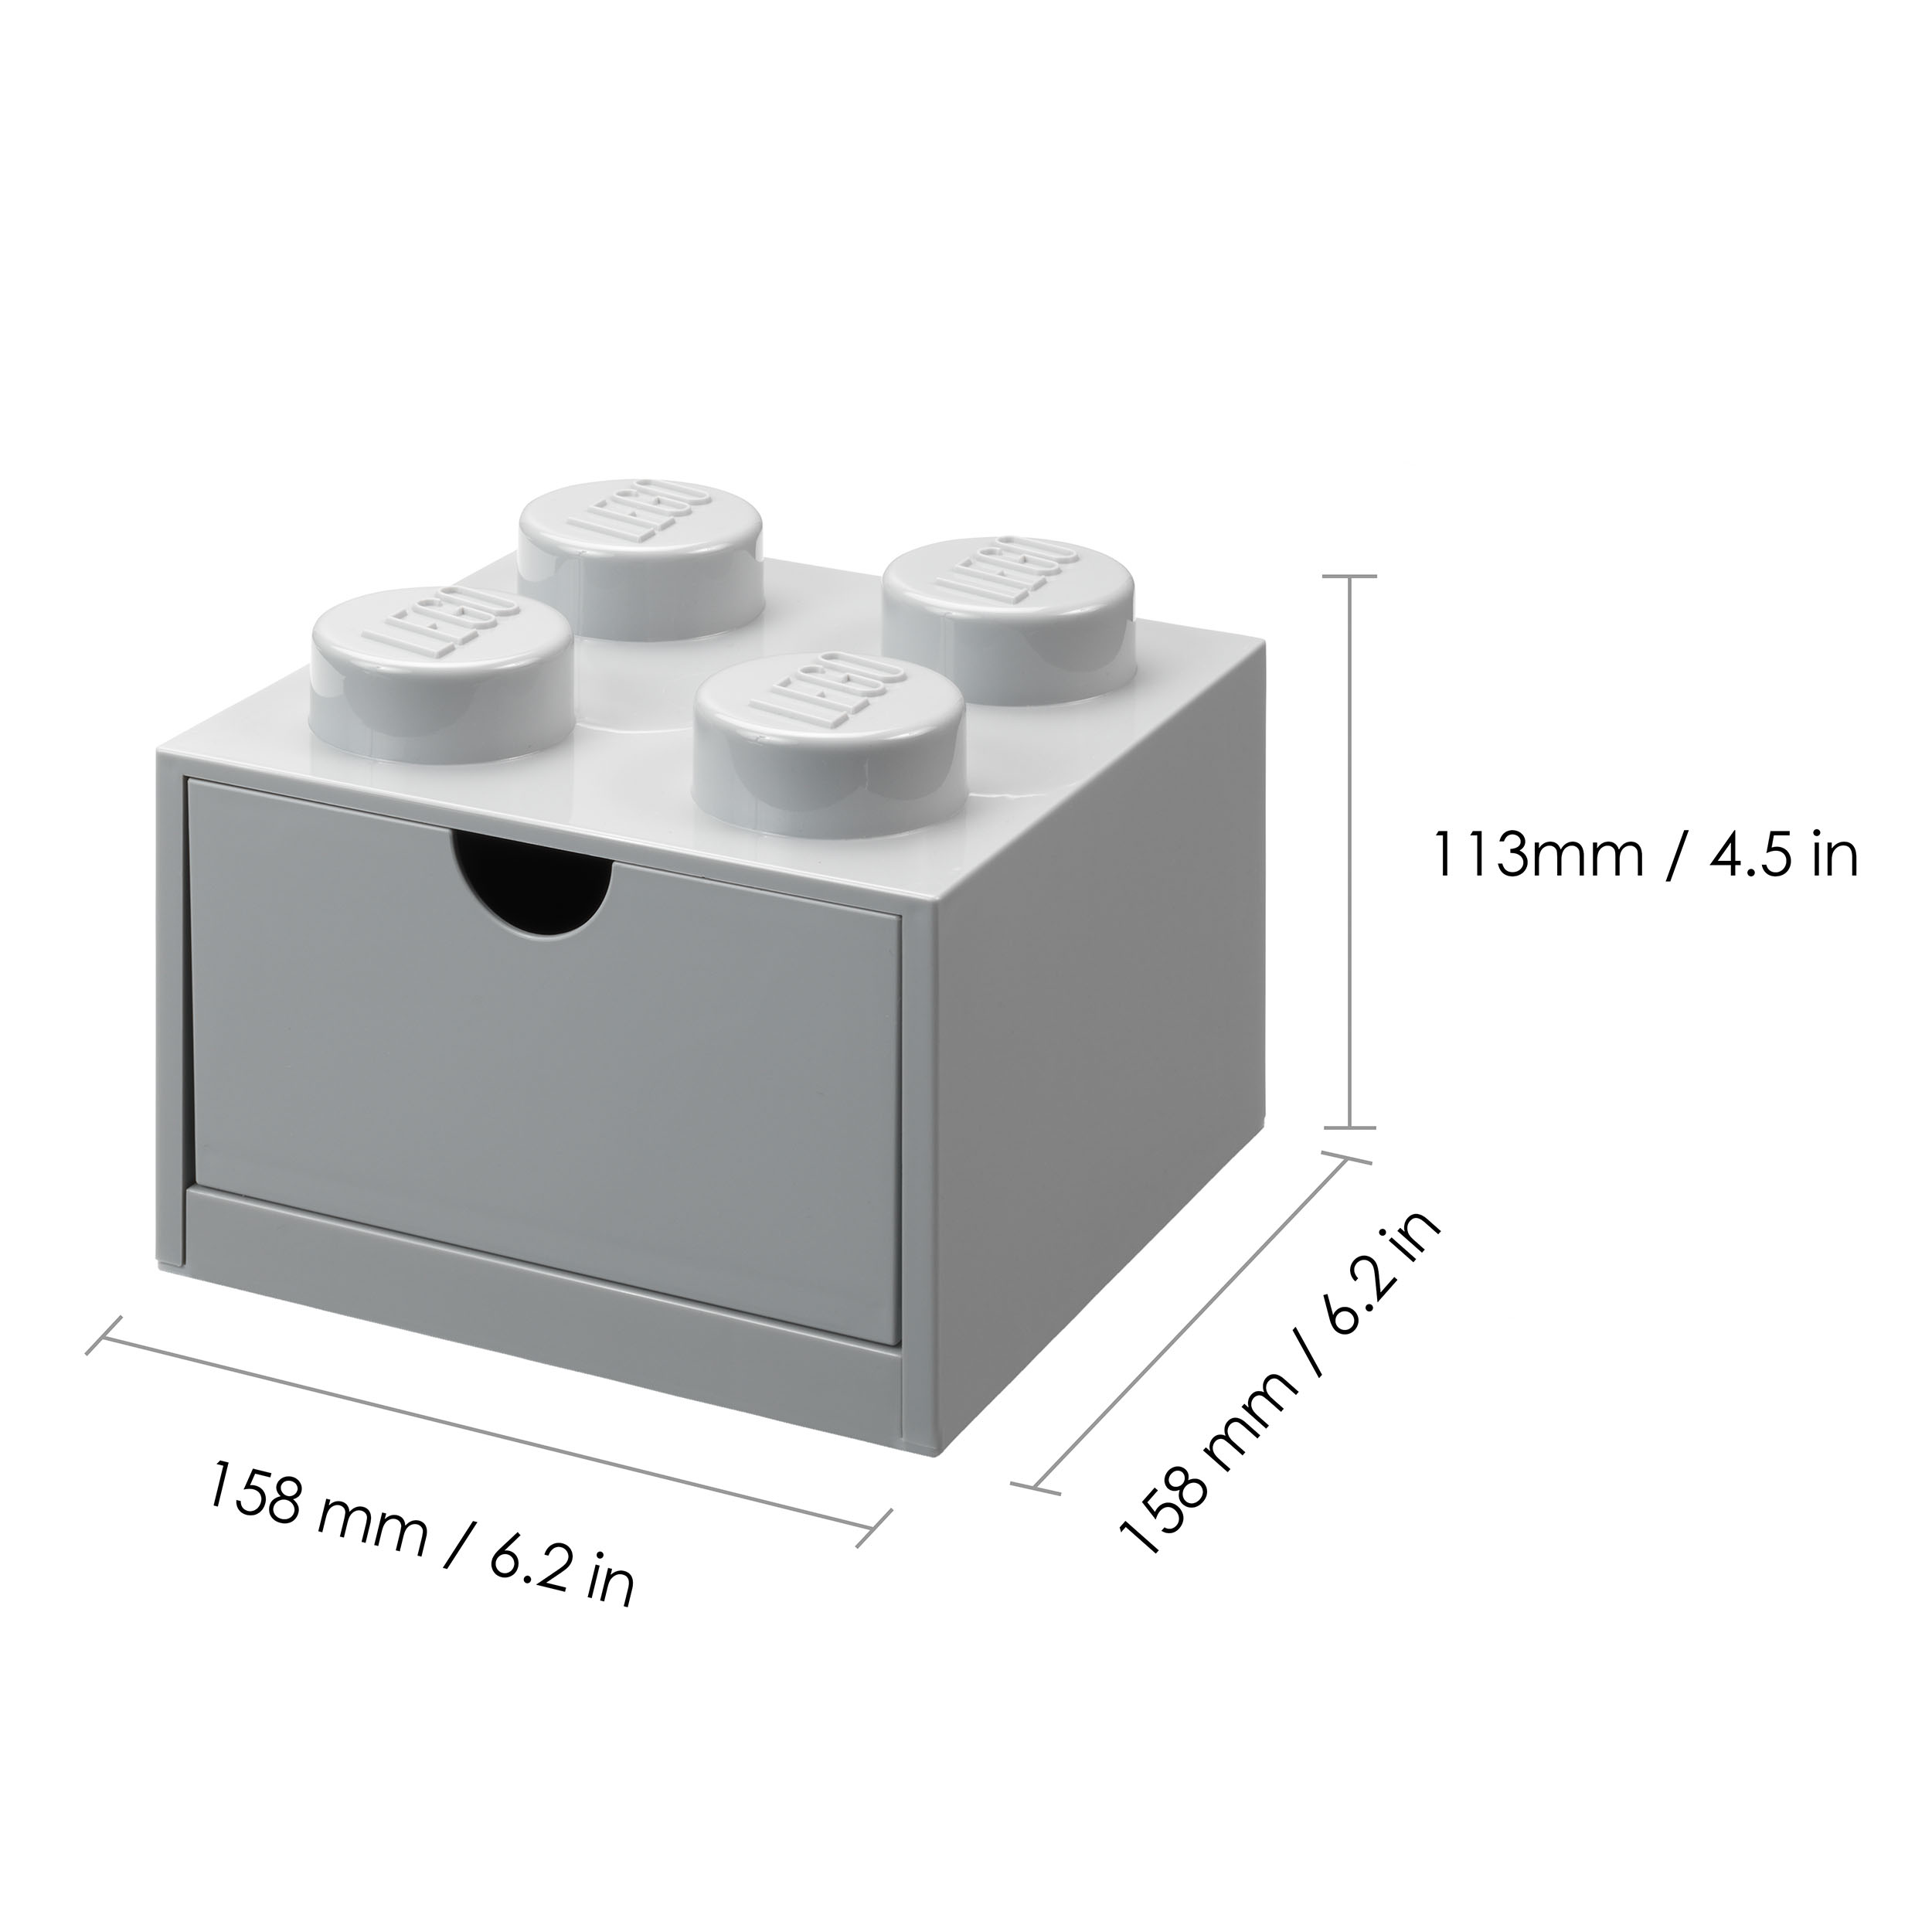 LEGO® Desk Drawer Aufbewahrungsbox Brick 4